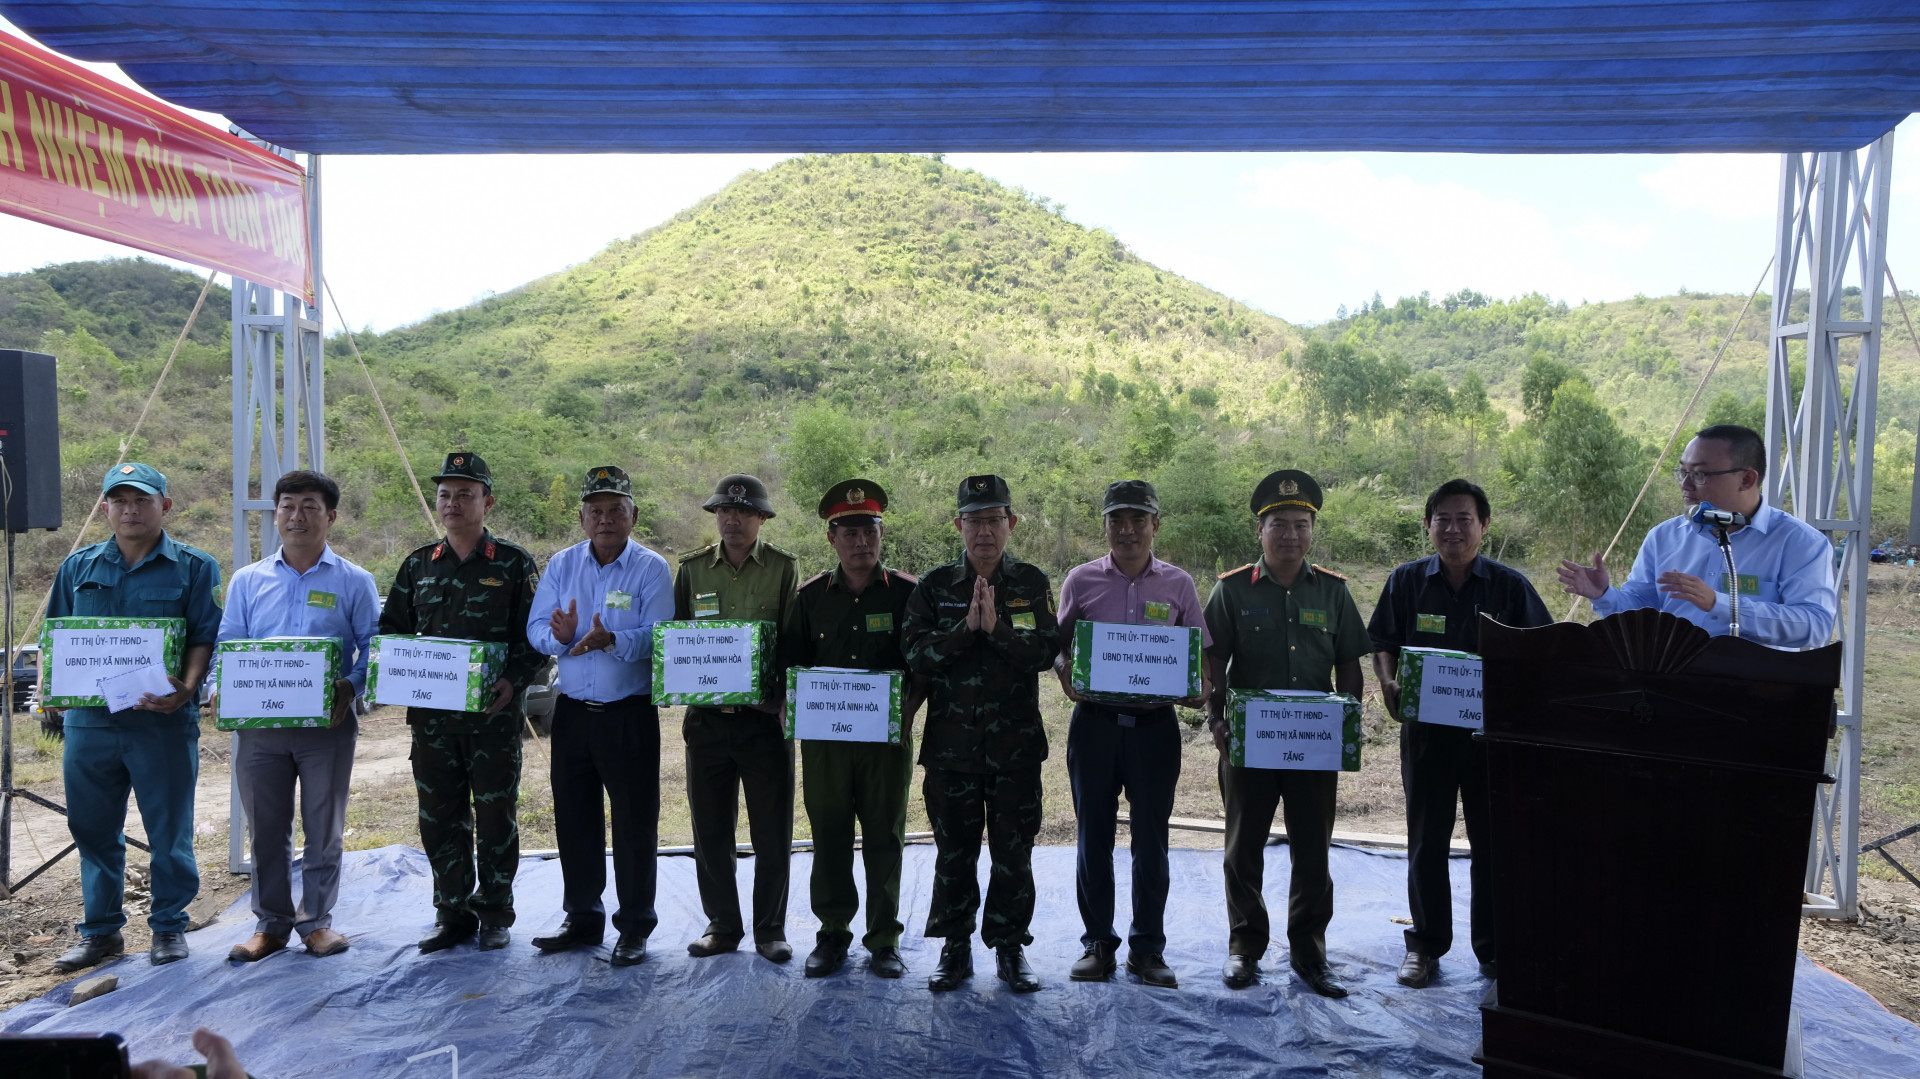 Kết thúc cuộc diễn tập, lãnh đạo thị xã Ninh Hòa khen thưởng cho 8 đơn vị có thành tích xuất sắc trong cuộc diễn tập lần này